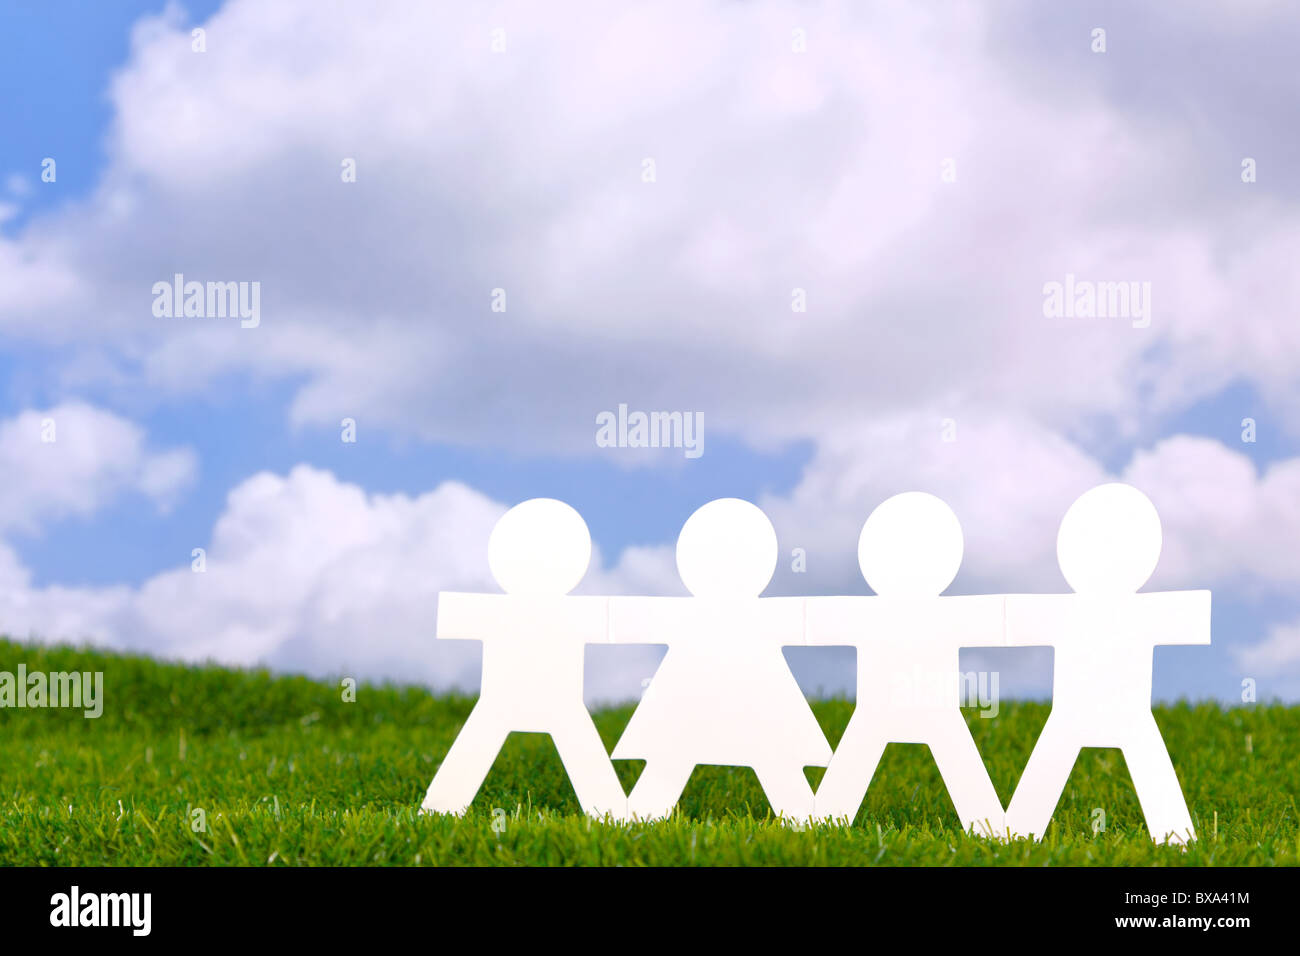 Concepto de imagen papel personas sosteniendo las manos en un campo con un fondo de cielo azul. Foto de stock